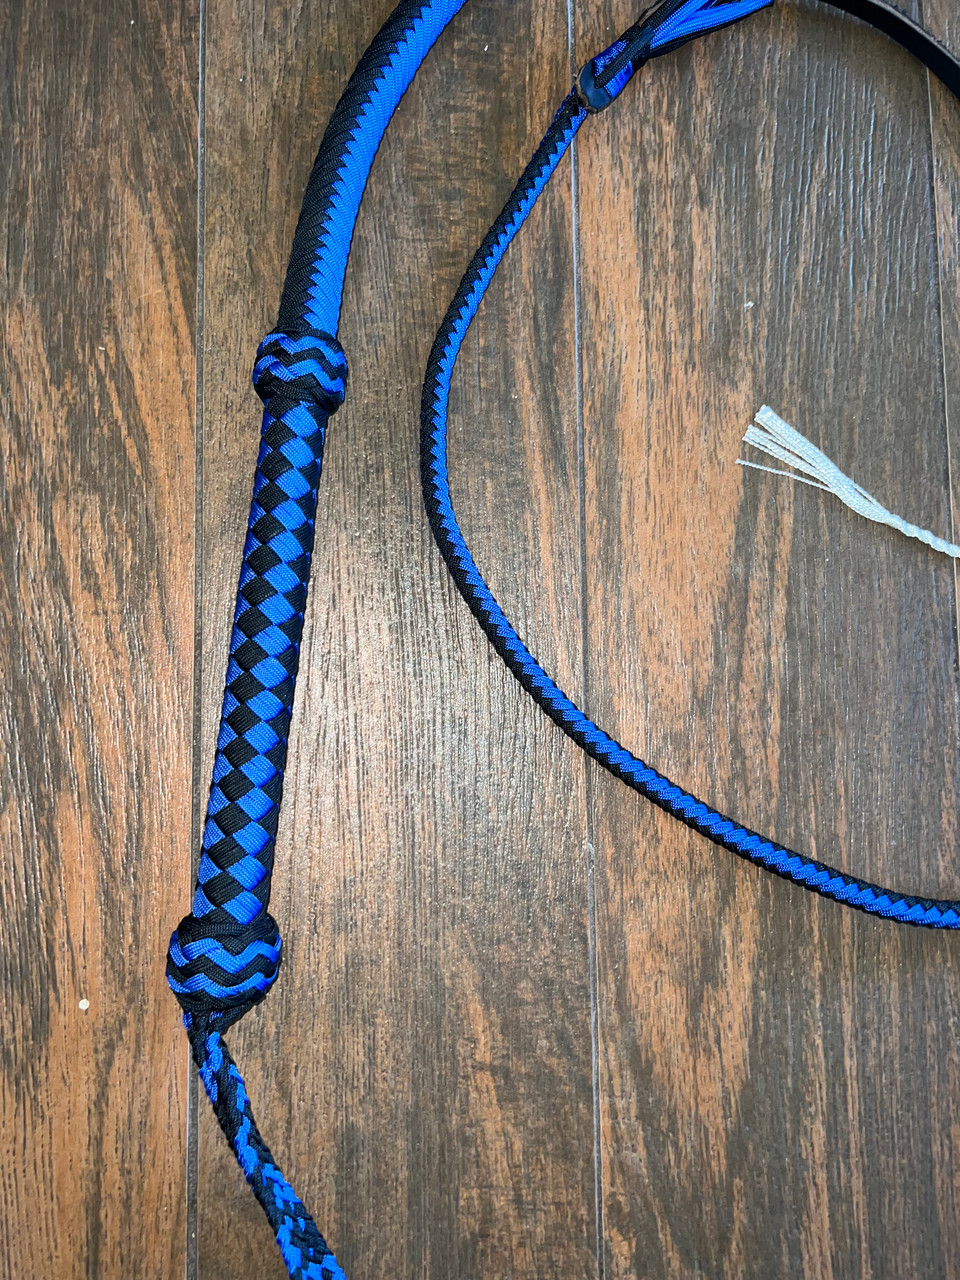 Bull Whip - Black & Blue Paracord Nylon on Leather 16 Ply - 6ft Handmade